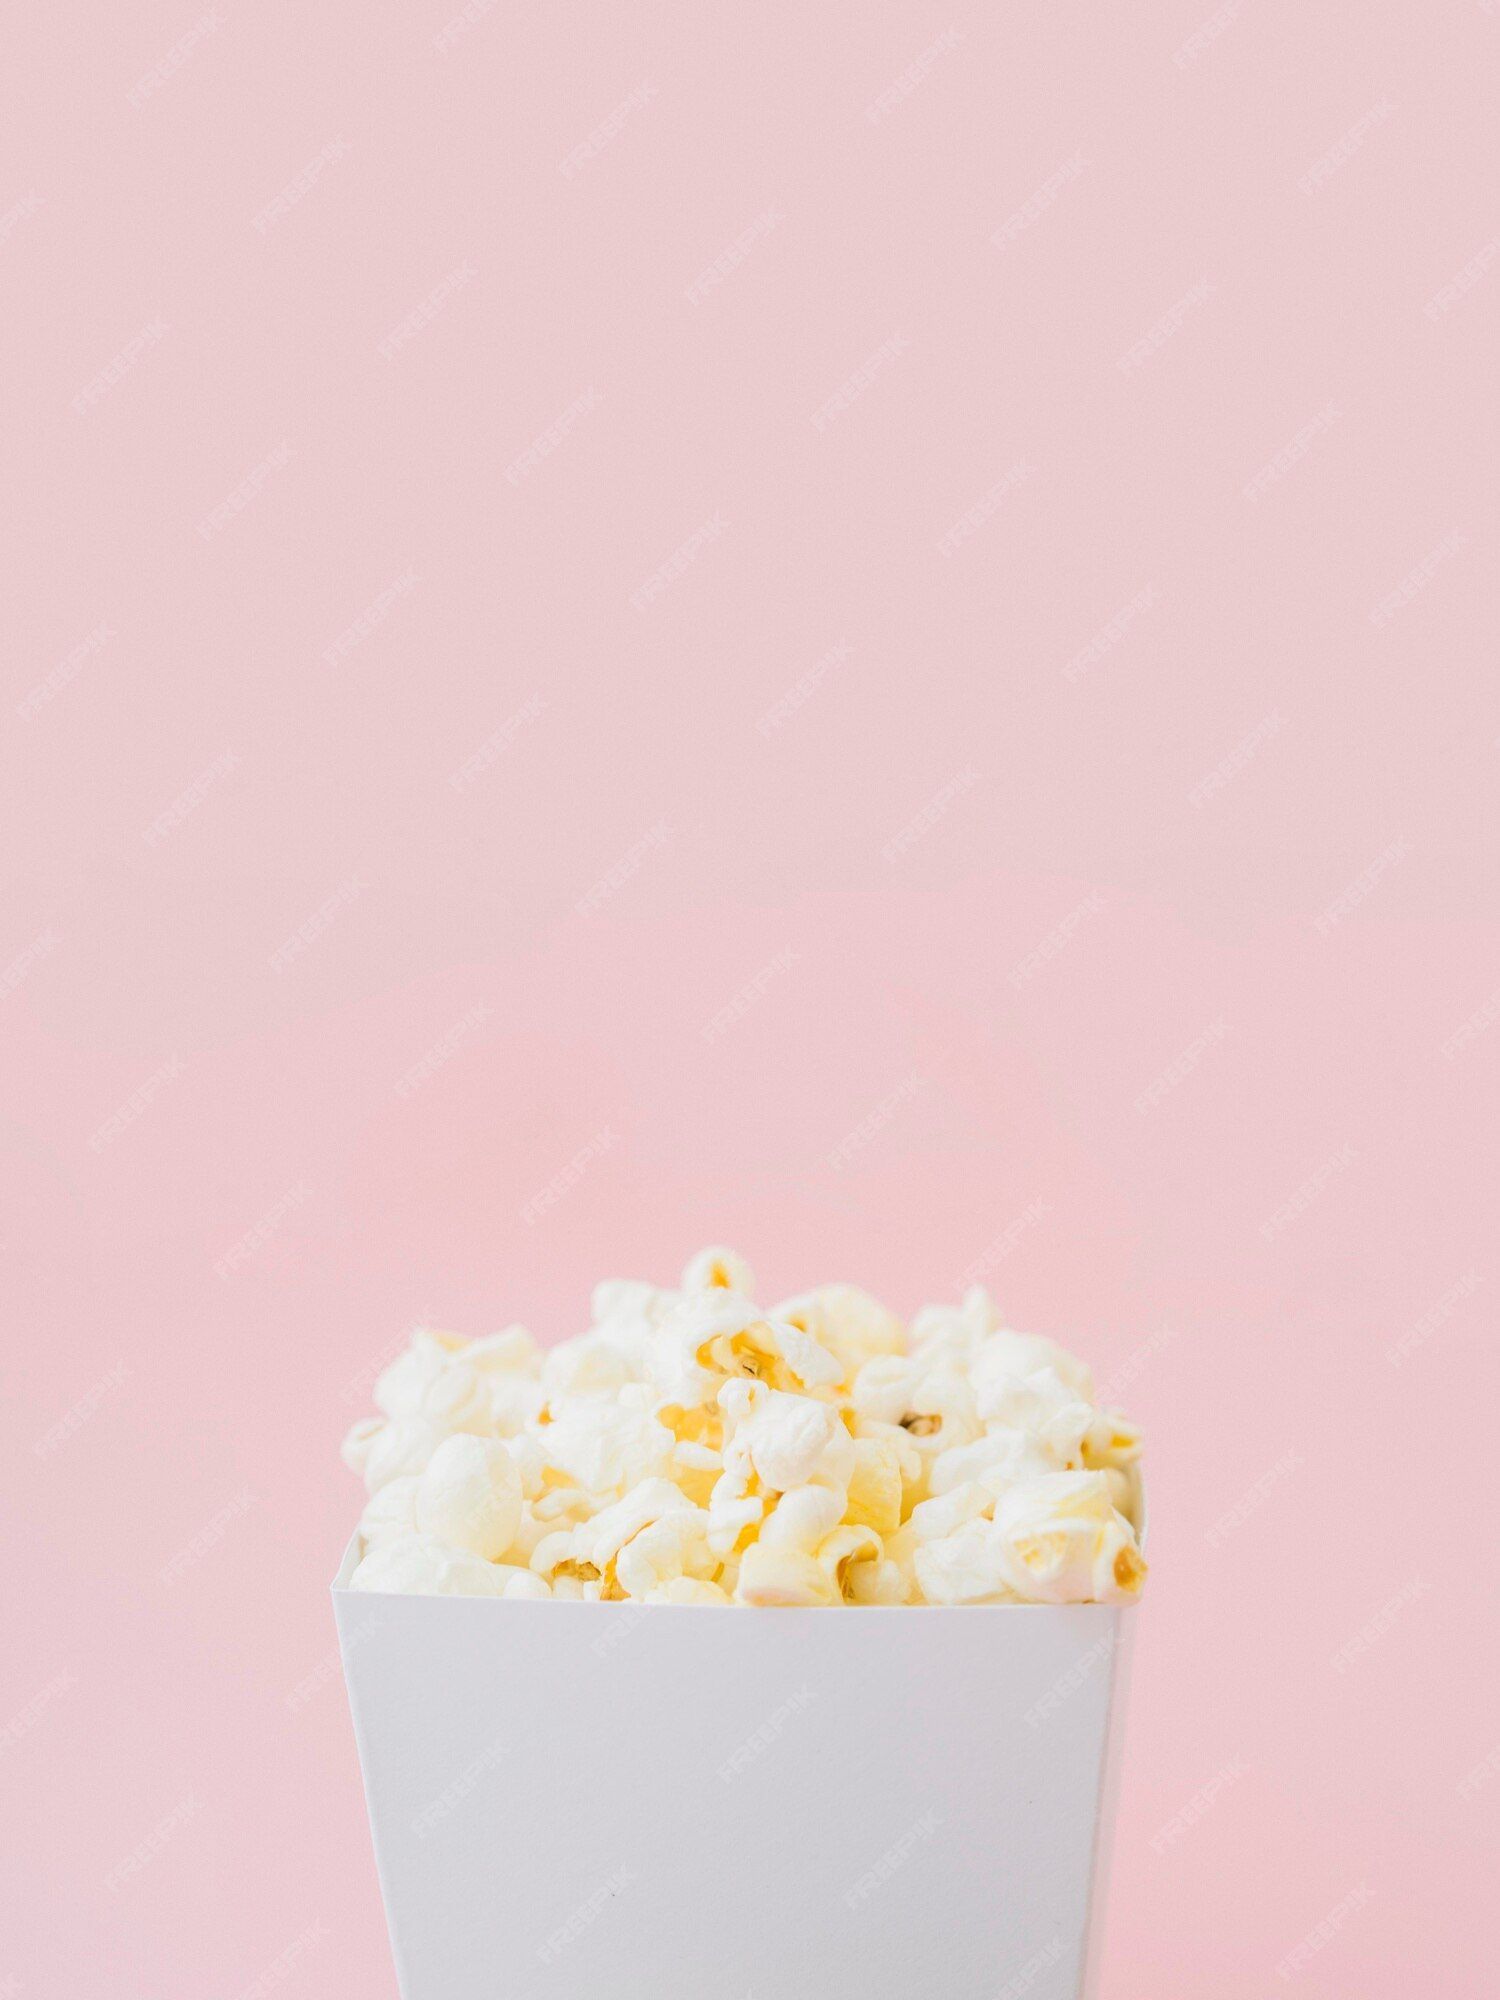 Popcorn Isolated Image